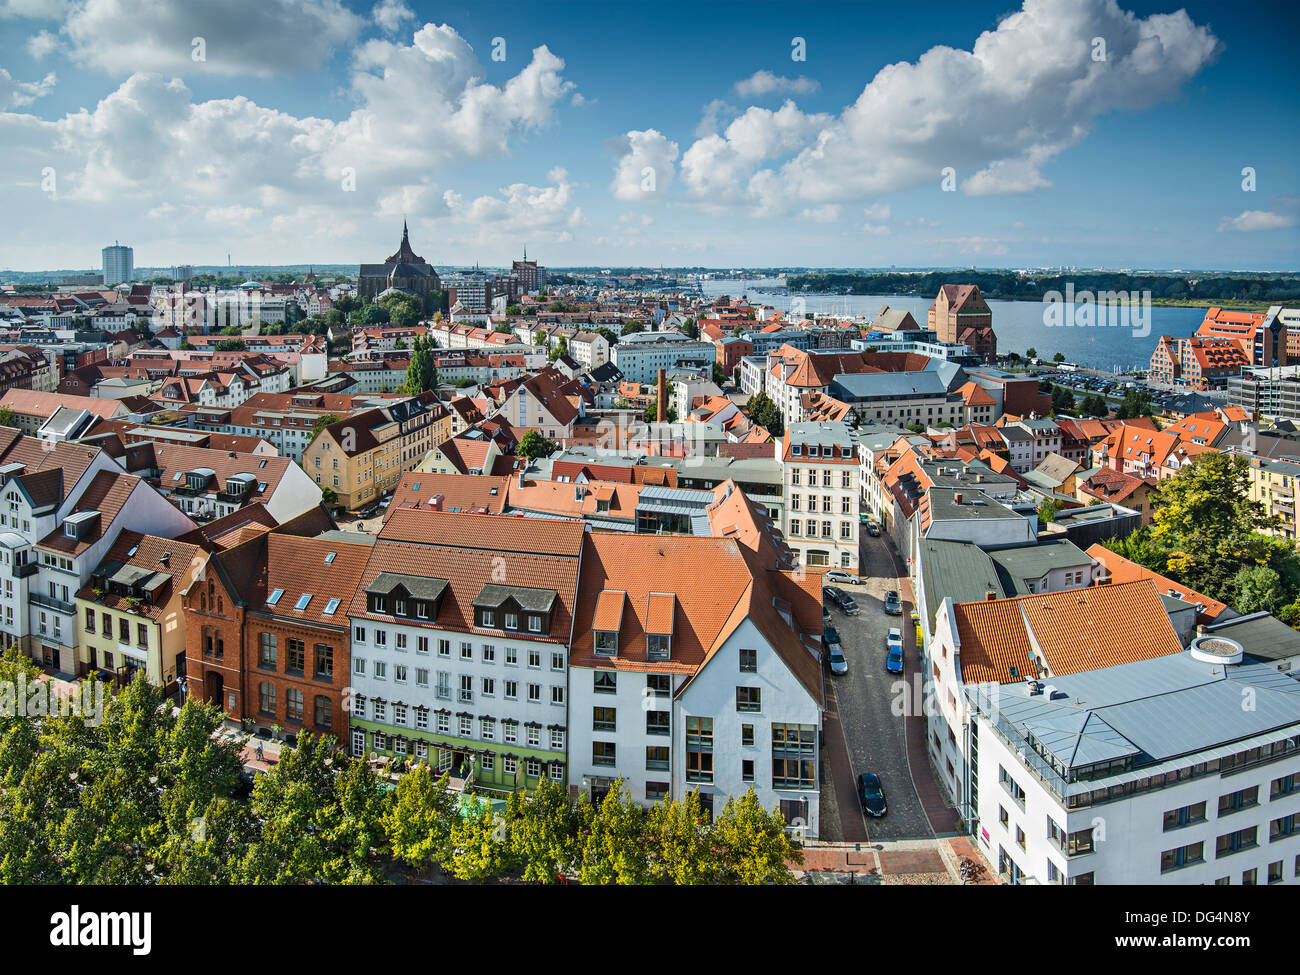 Horizonte de la ciudad de Rostock, Alemania. Foto de stock